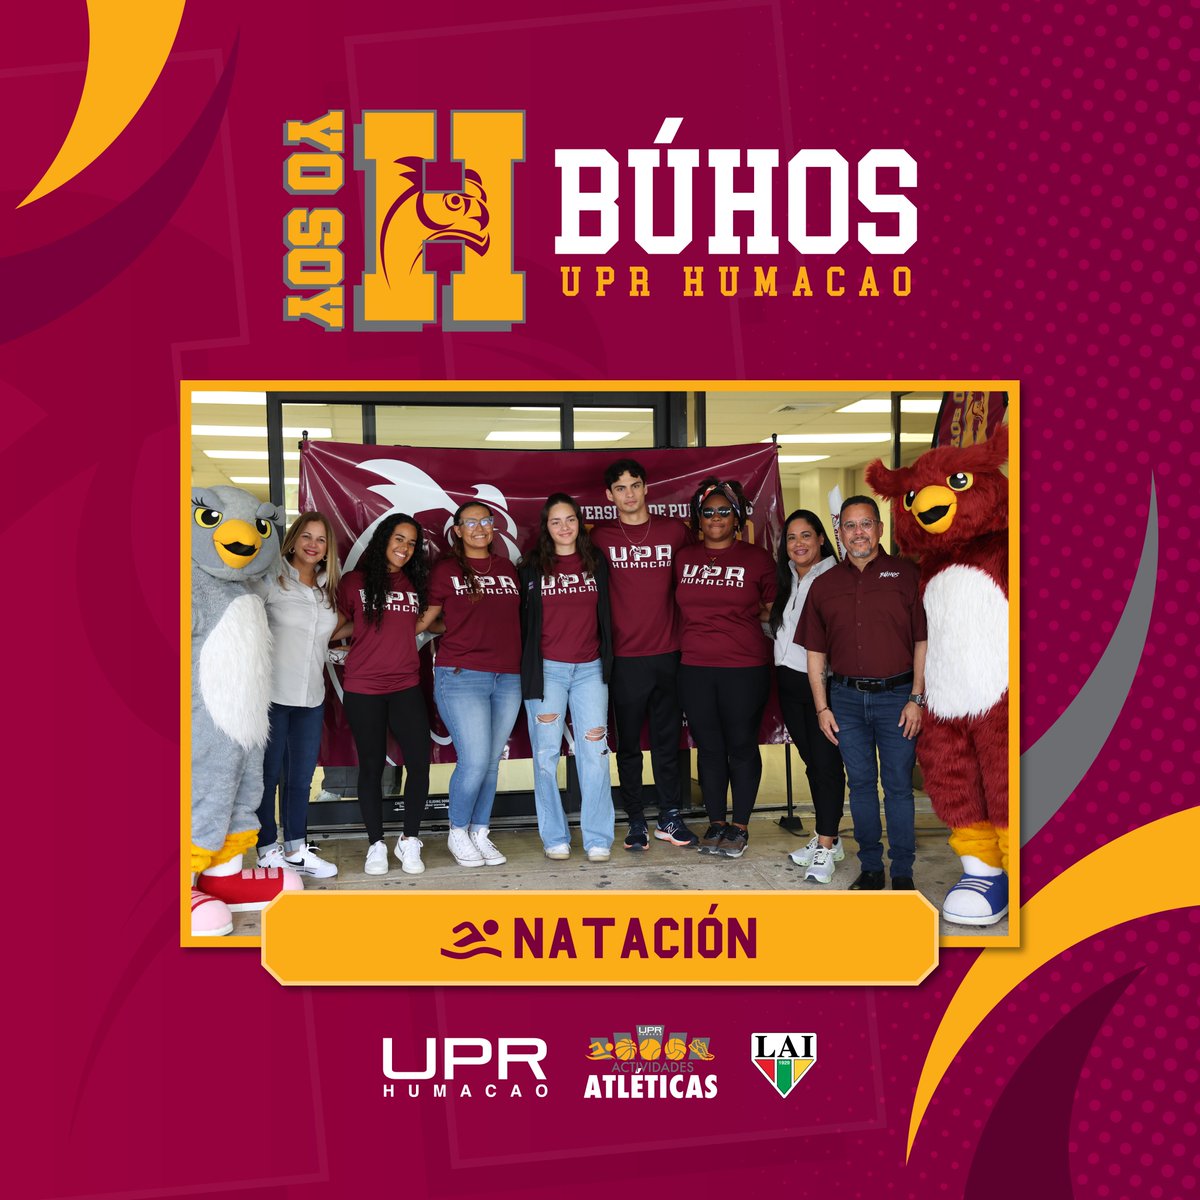 🏊Hoy nuestros atletas del equipo de Natación comienzan su participación en el Campeonato de Natación.

¡Apoyemos a los nuestros! 🦉

#SiempreBúhos @DeportesUprh